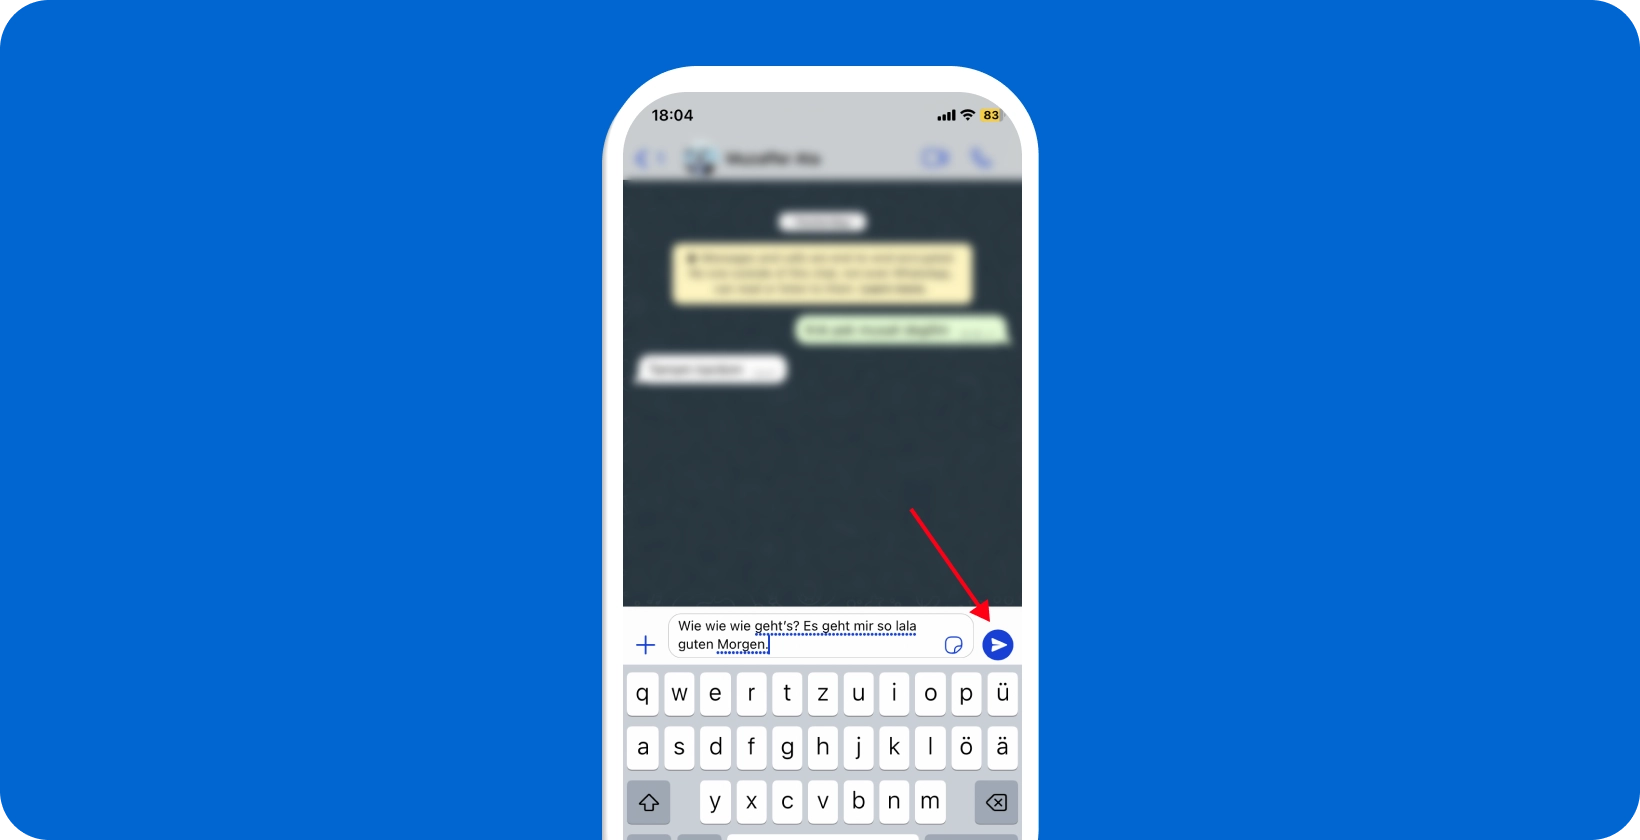 Ecranul smartphone-ului care arată funcția de dictare vocală a WhatsApp utilizată, cu o pictogramă de microfon evidențiată.